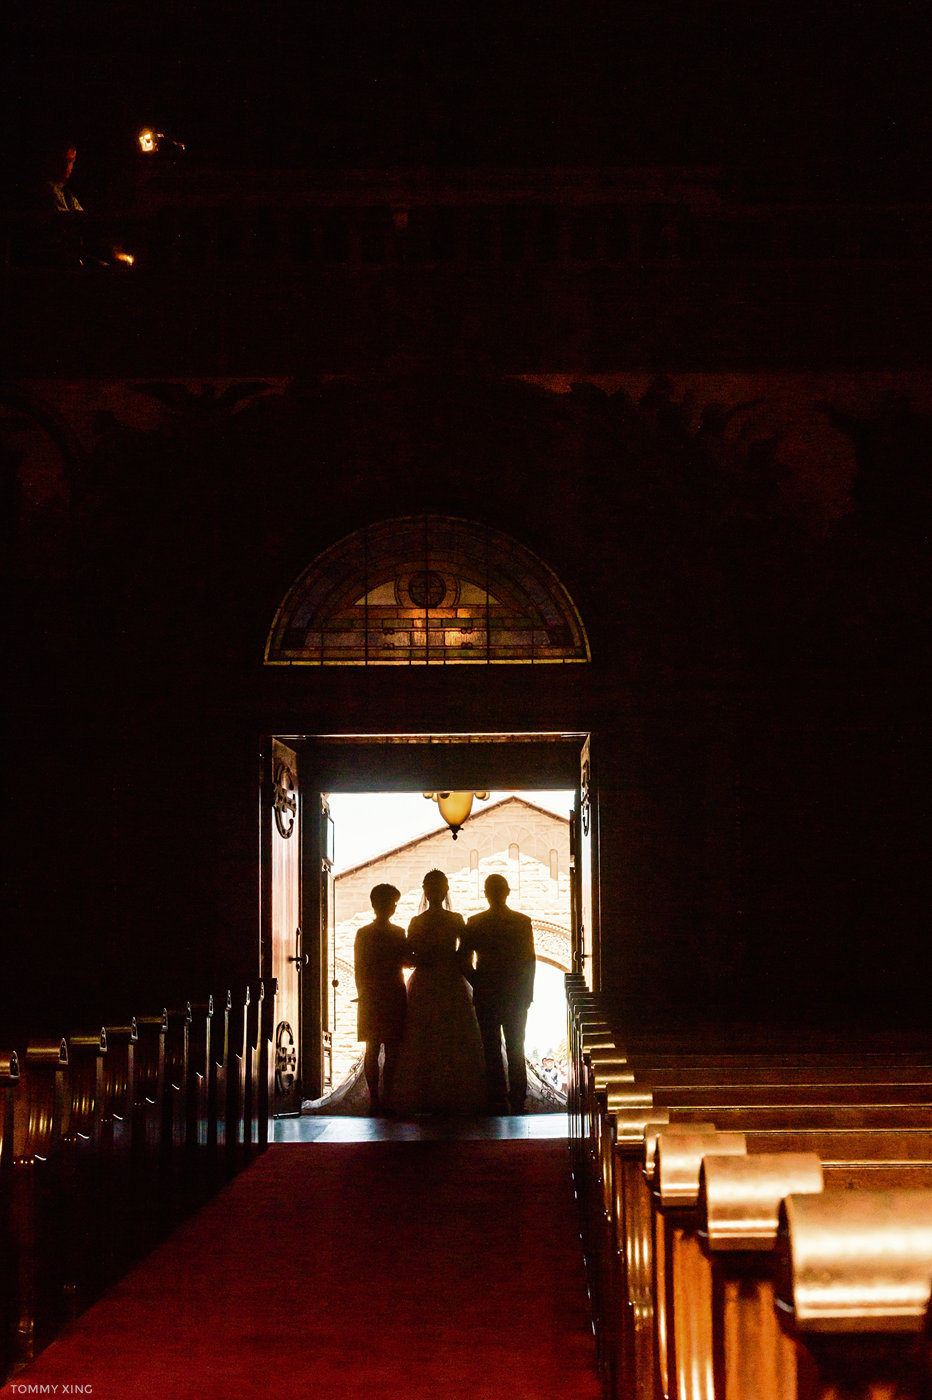 stanford memorial church wedding 旧金山湾区斯坦福教堂婚礼 Tommy Xing Photography 037.jpg